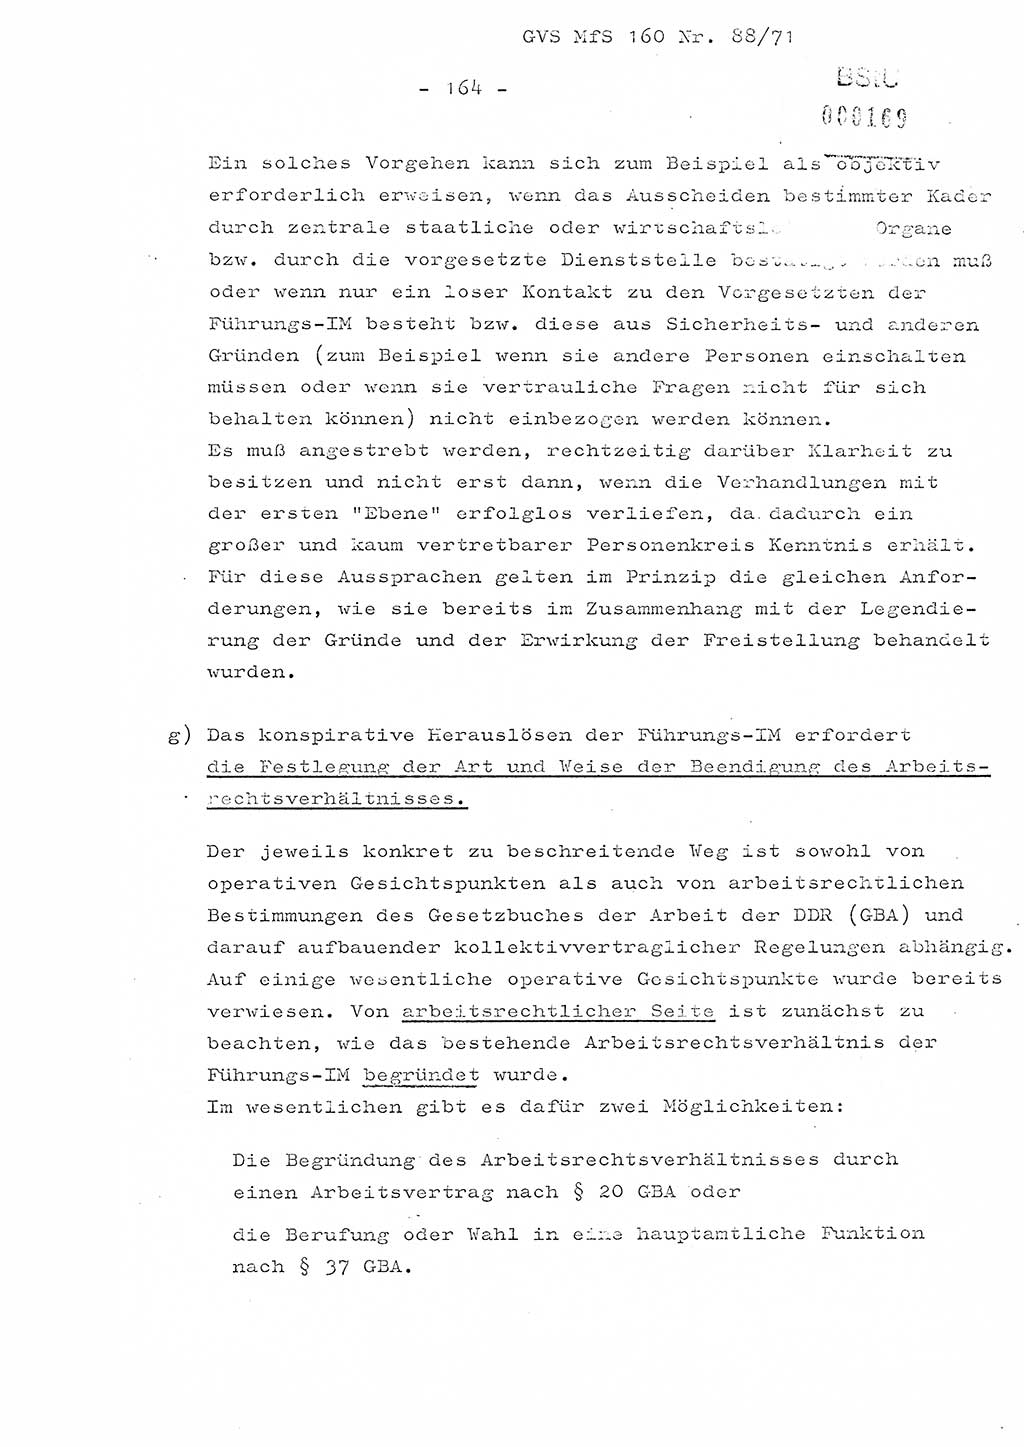 Dissertation Oberstleutnant Josef Schwarz (BV Schwerin), Major Fritz Amm (JHS), Hauptmann Peter Gräßler (JHS), Ministerium für Staatssicherheit (MfS) [Deutsche Demokratische Republik (DDR)], Juristische Hochschule (JHS), Geheime Verschlußsache (GVS) 160-88/71, Potsdam 1972, Seite 164 (Diss. MfS DDR JHS GVS 160-88/71 1972, S. 164)